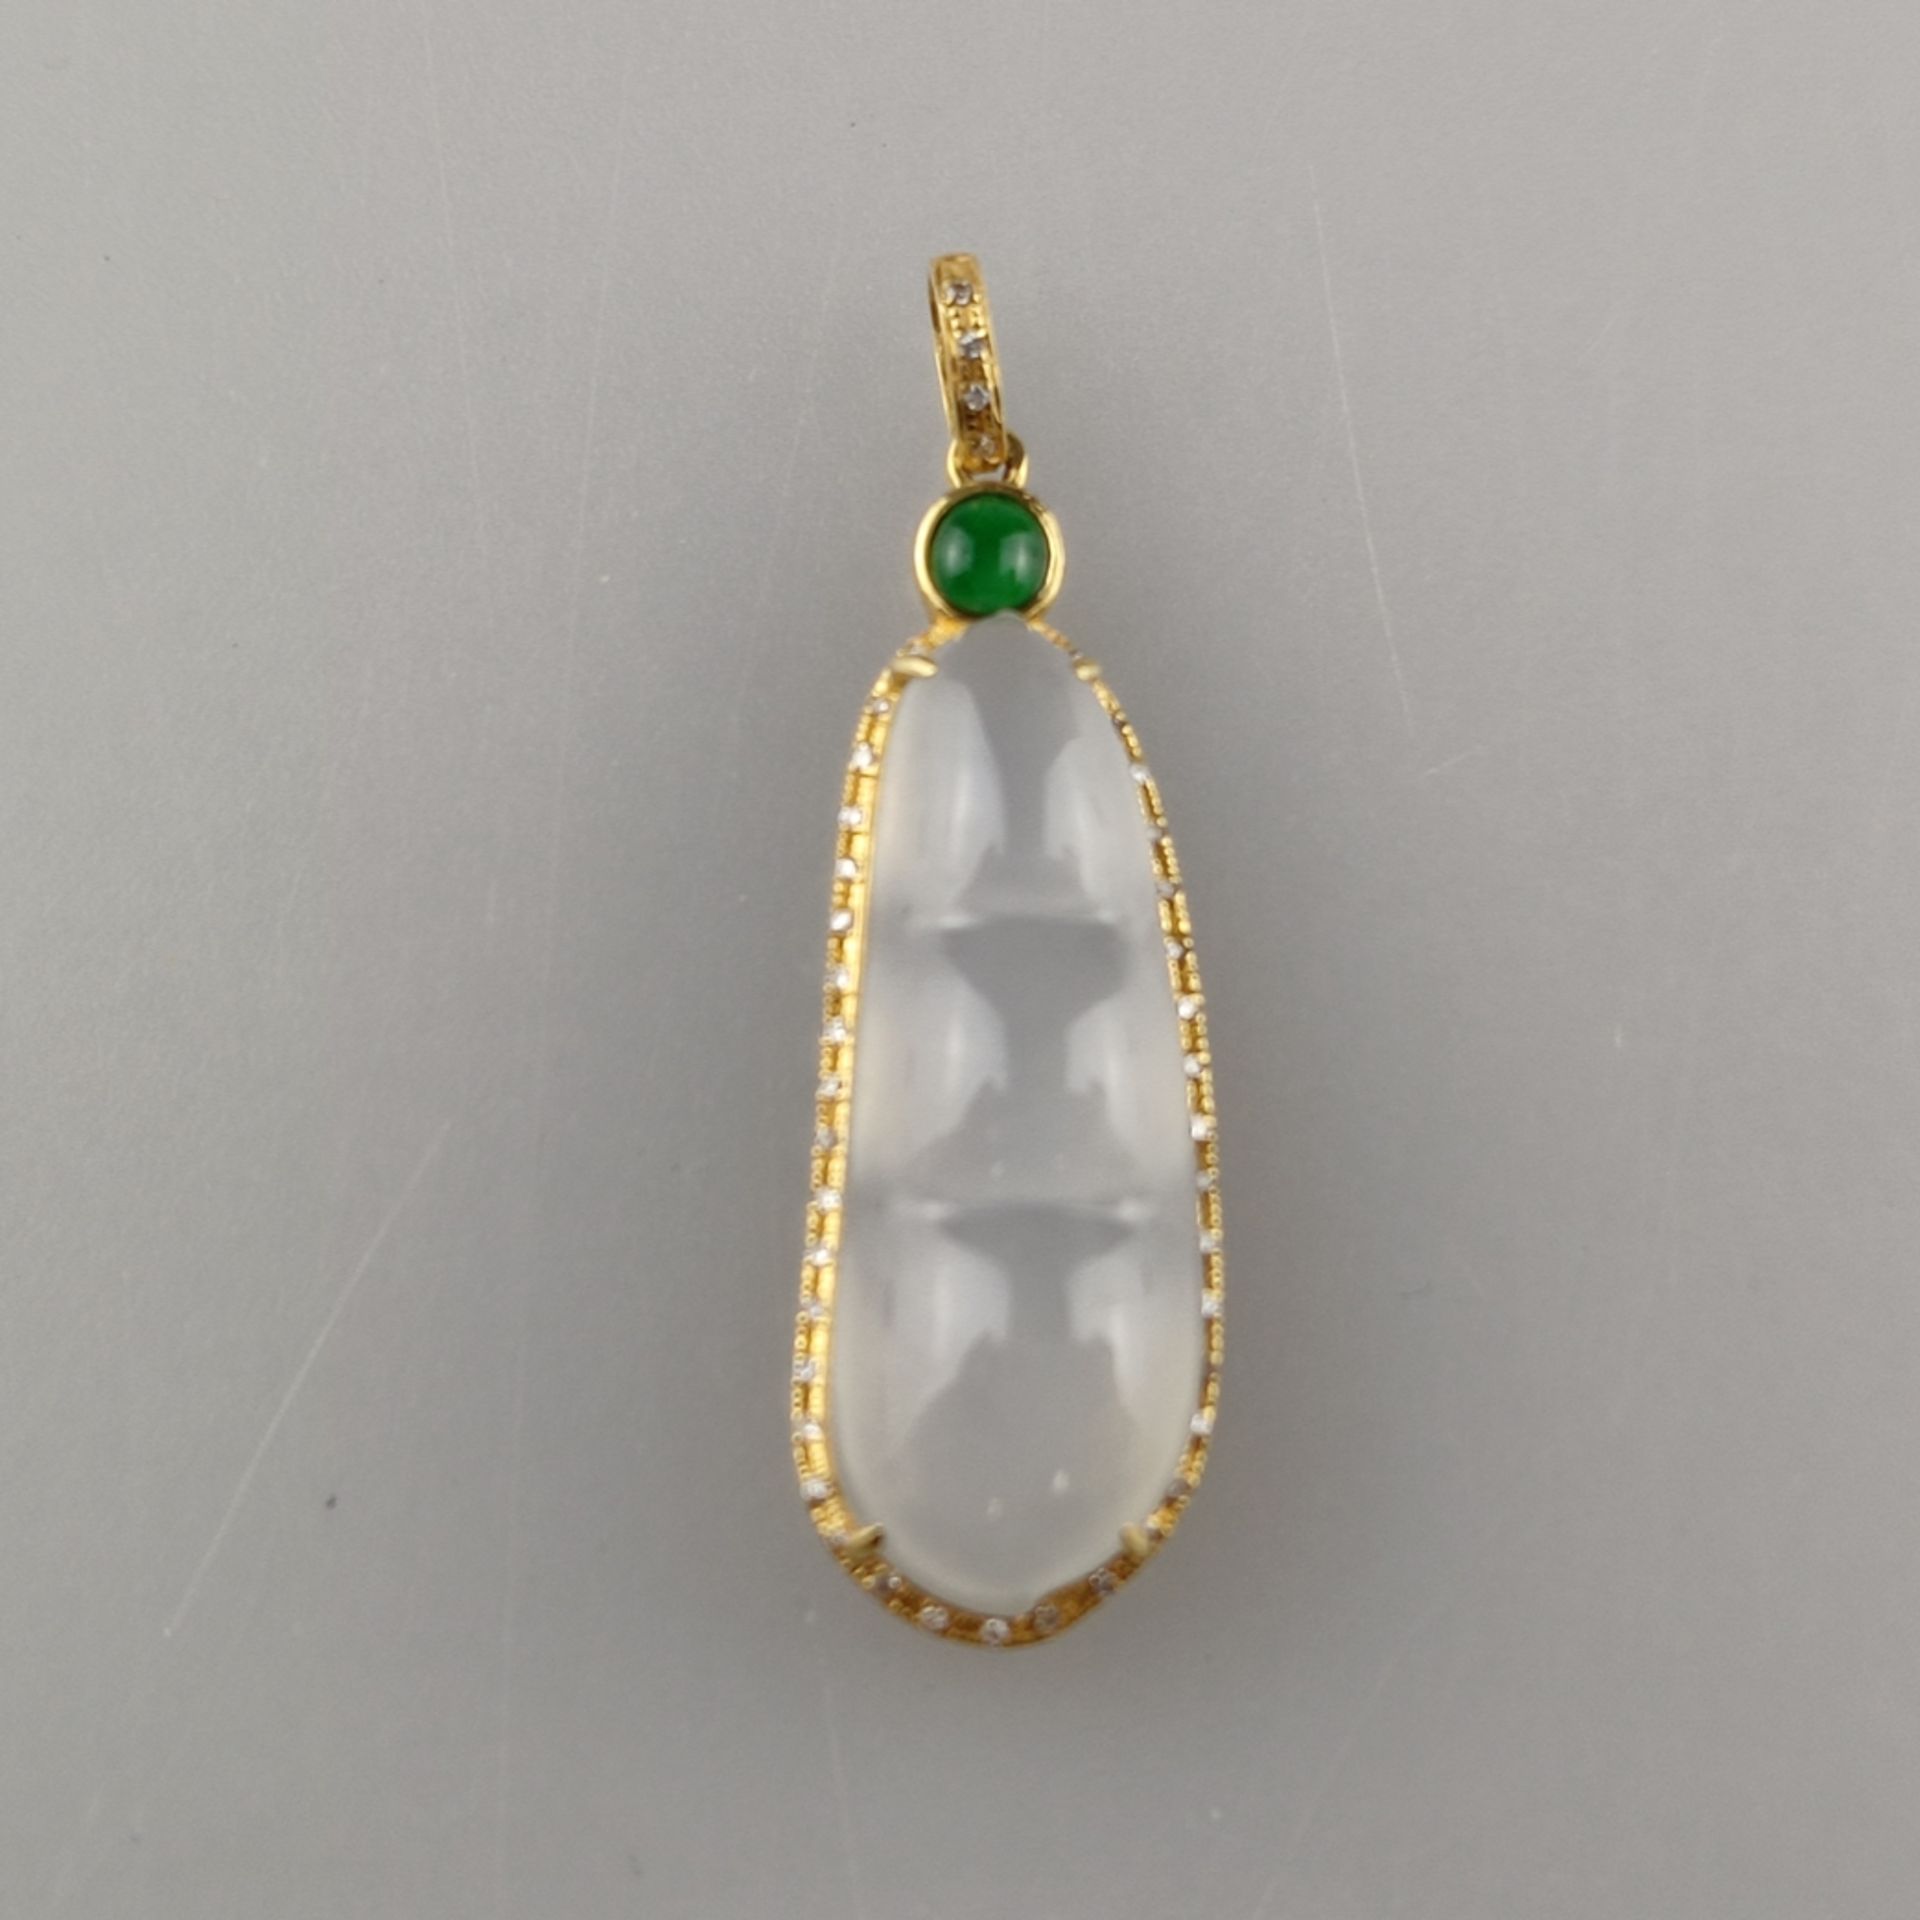 Jade-Anhänger mit Diamanten - Gelbgold 750/000 (18K), milchig weiße Jade, grüner Jadecabochon, schö - Bild 2 aus 6